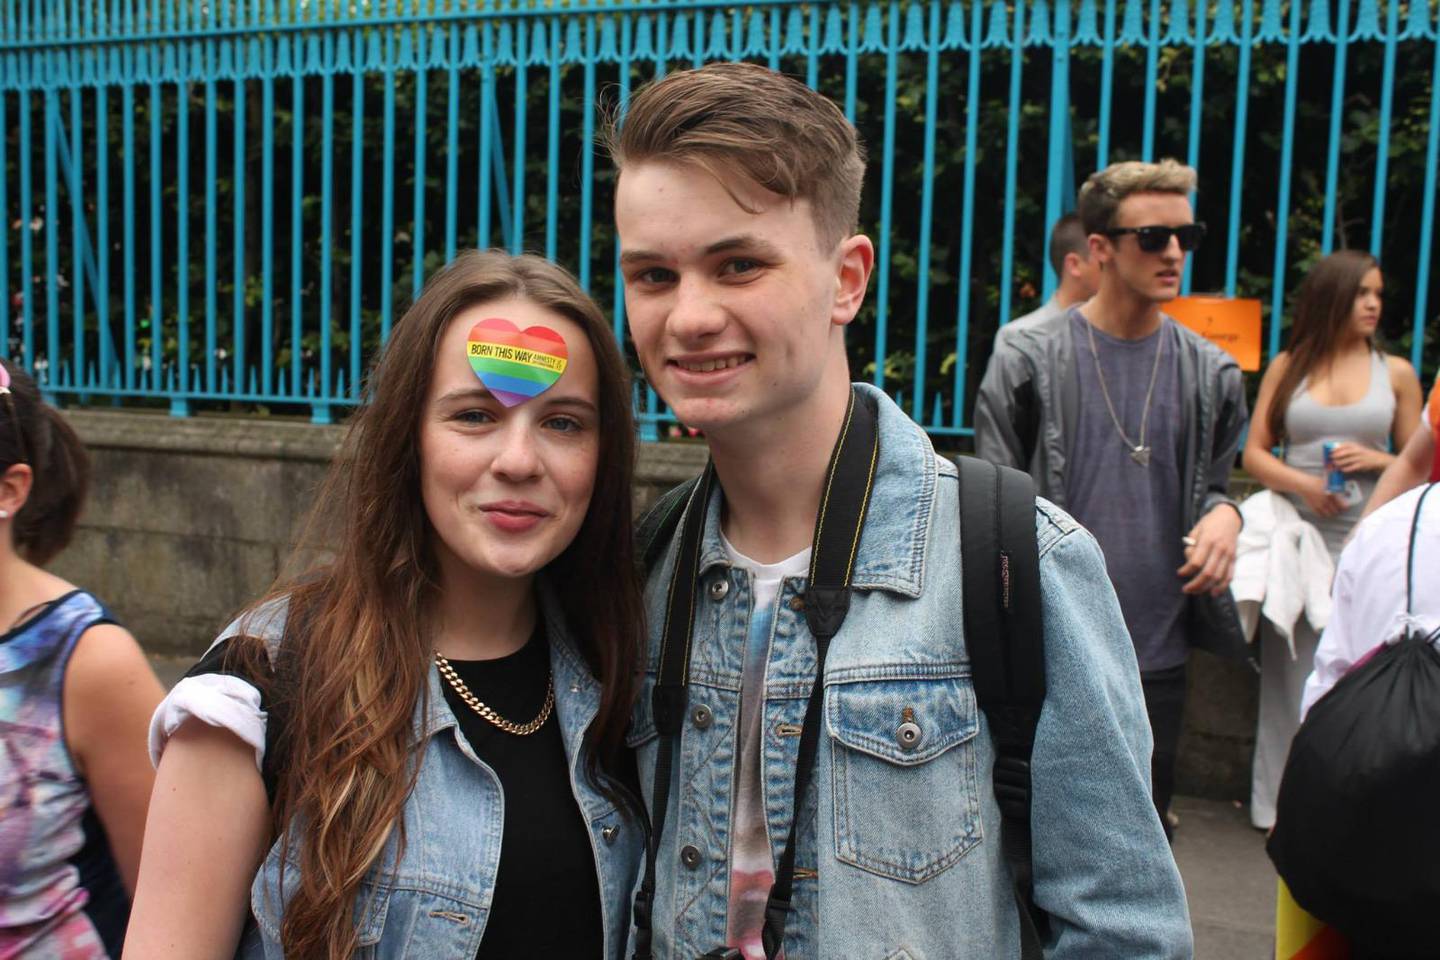 Luke Faulkner and friend Sophia at Pride in 2013